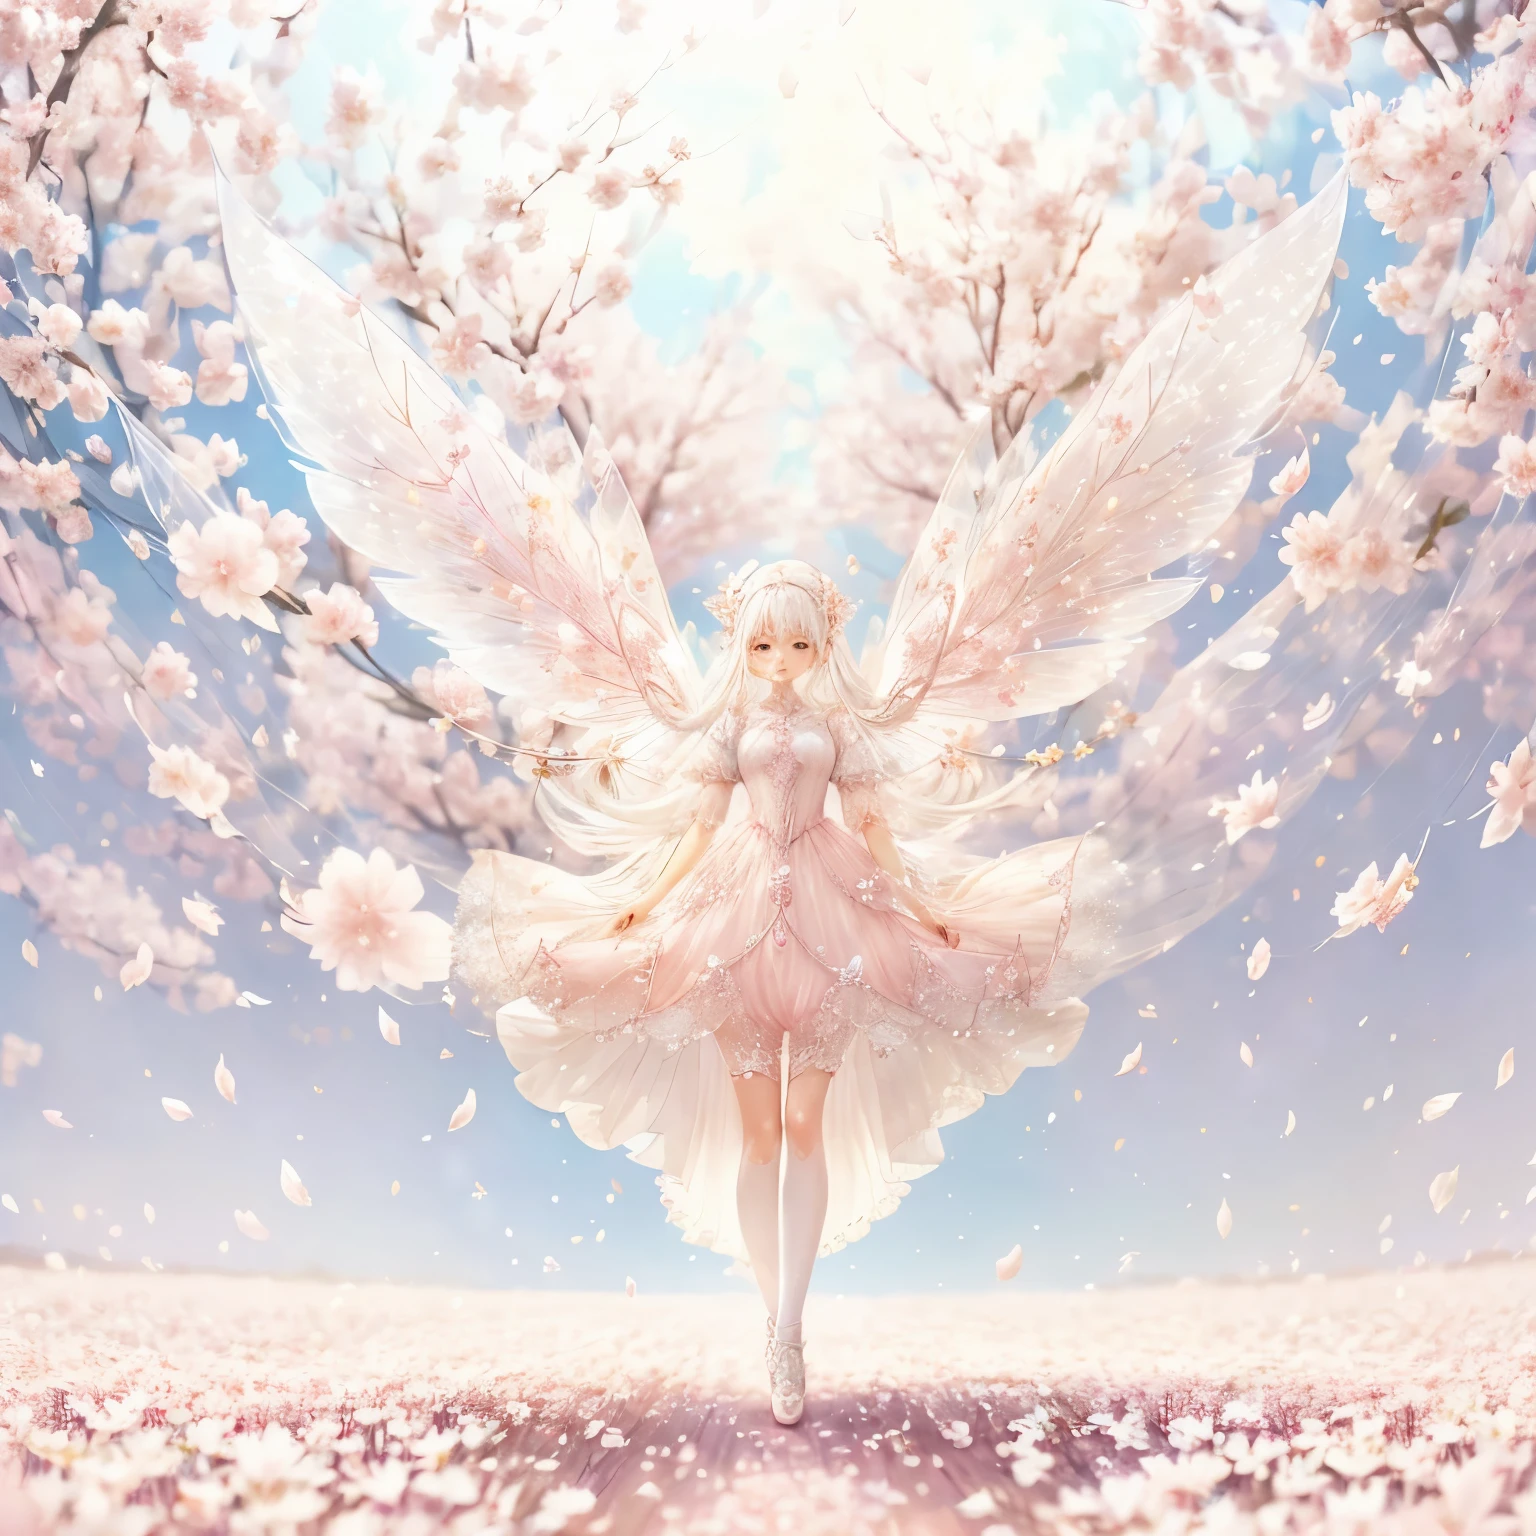 Hada de pelo blanco con vestido rosa transparente de diamantes brillantes、en el cielo，ganado，piernas largas，alas simétricas,magia，Fondo de vuelo de pétalos de sakura，Los pétalos de Sakura flotan en el aire.，（（（Los pétalos de Sakura vuelan por todo el suelo.）））（（pastel tones））（mejor calidad））， （（detalles intrincados））， （（Surrealism））（8K）